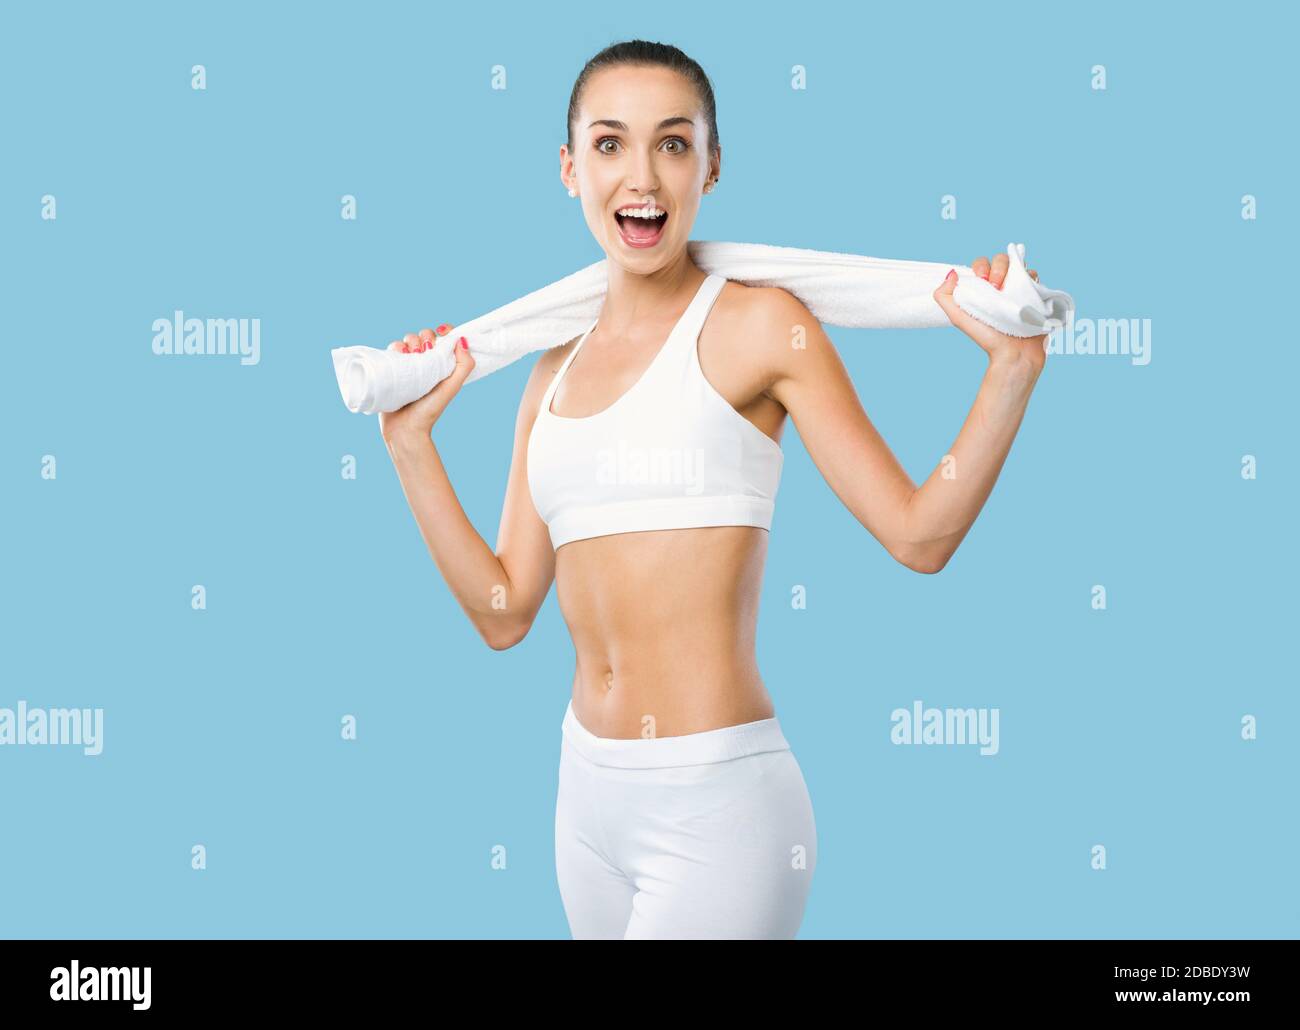 Mujer feliz de ajuste sosteniendo una toalla y posando después de hacer ejercicio, la aptitud y el concepto de ejercicio Foto de stock